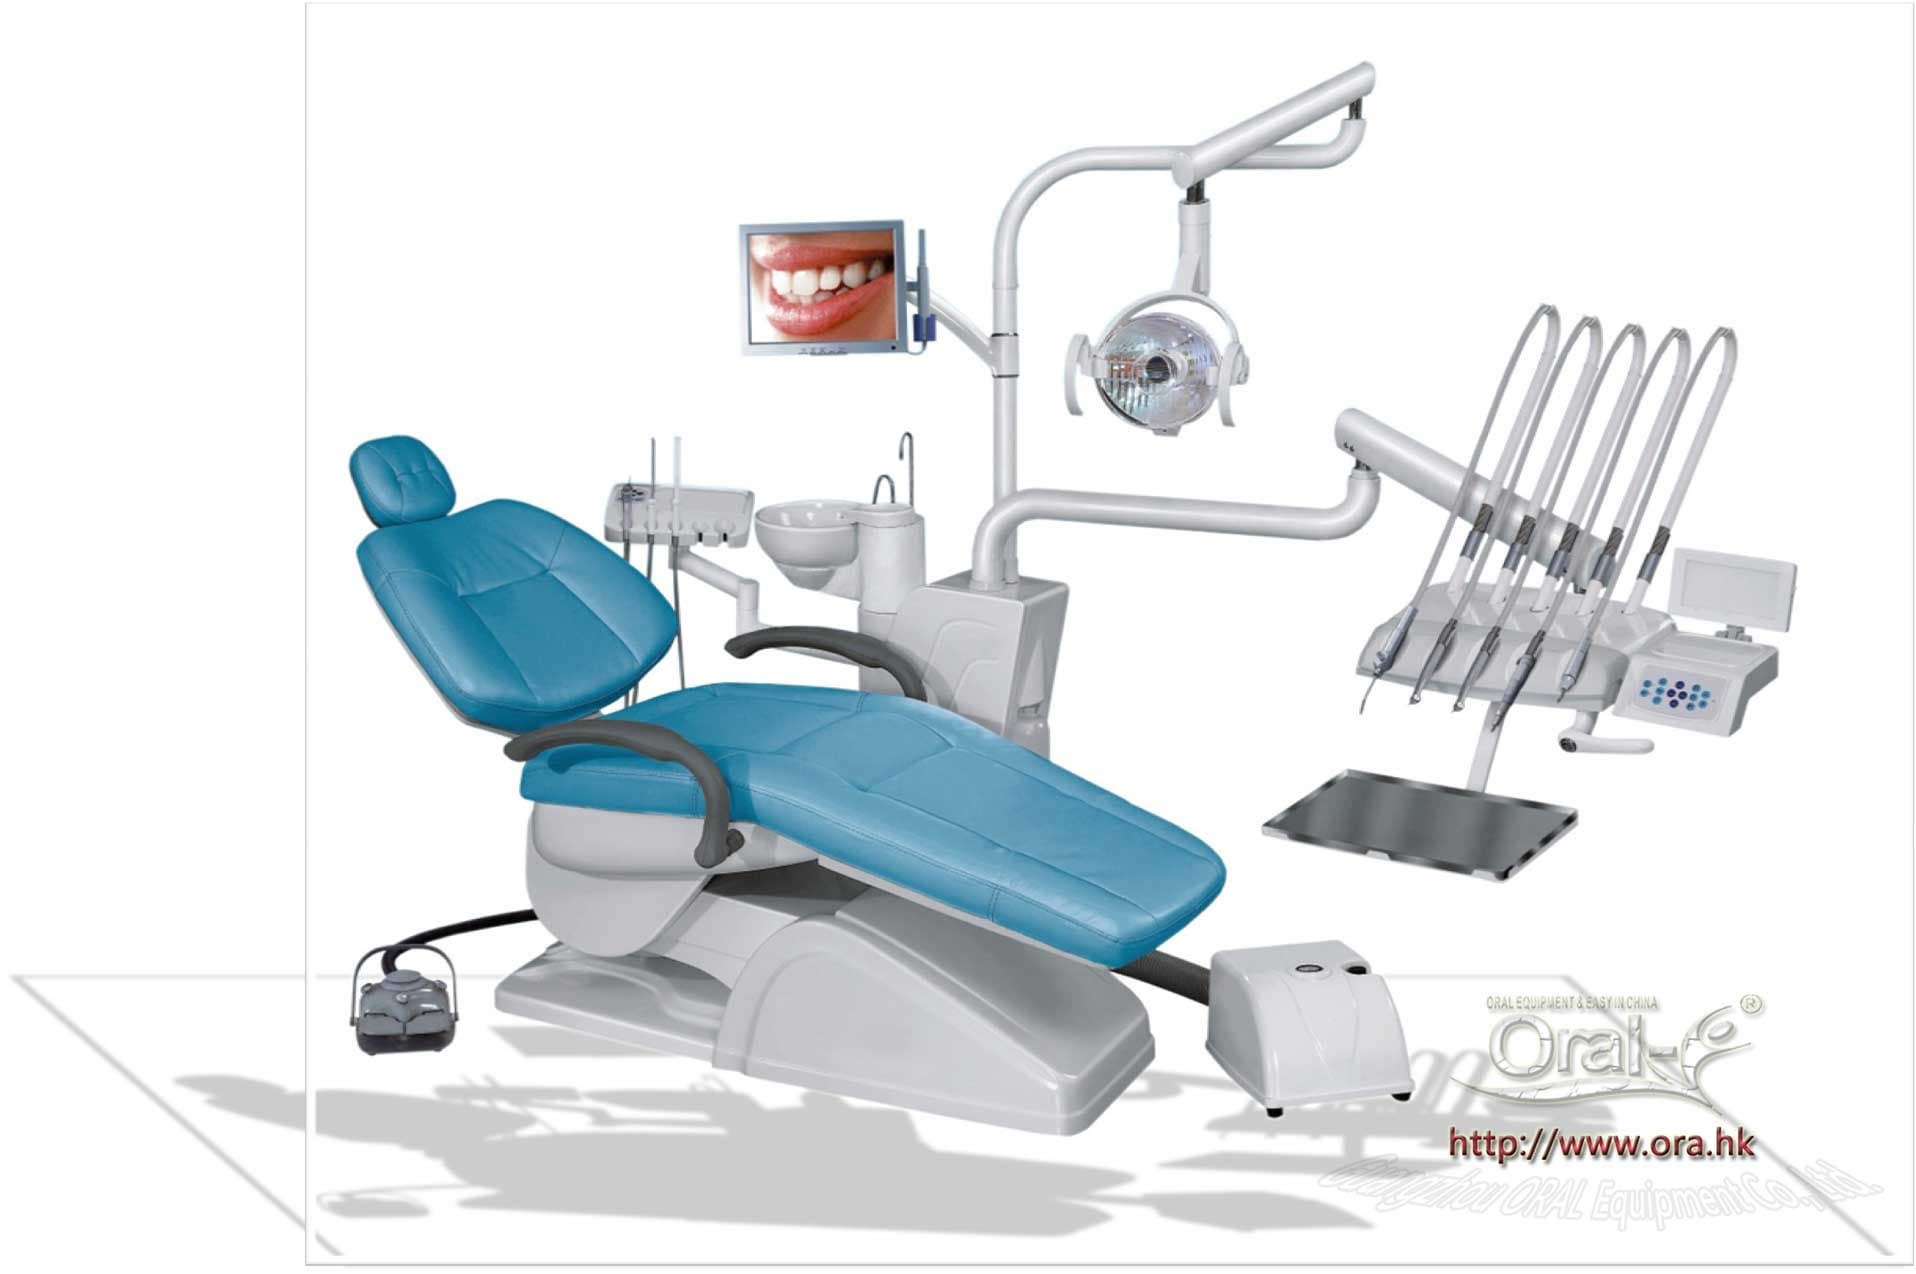 ORAL-E dental chair unit